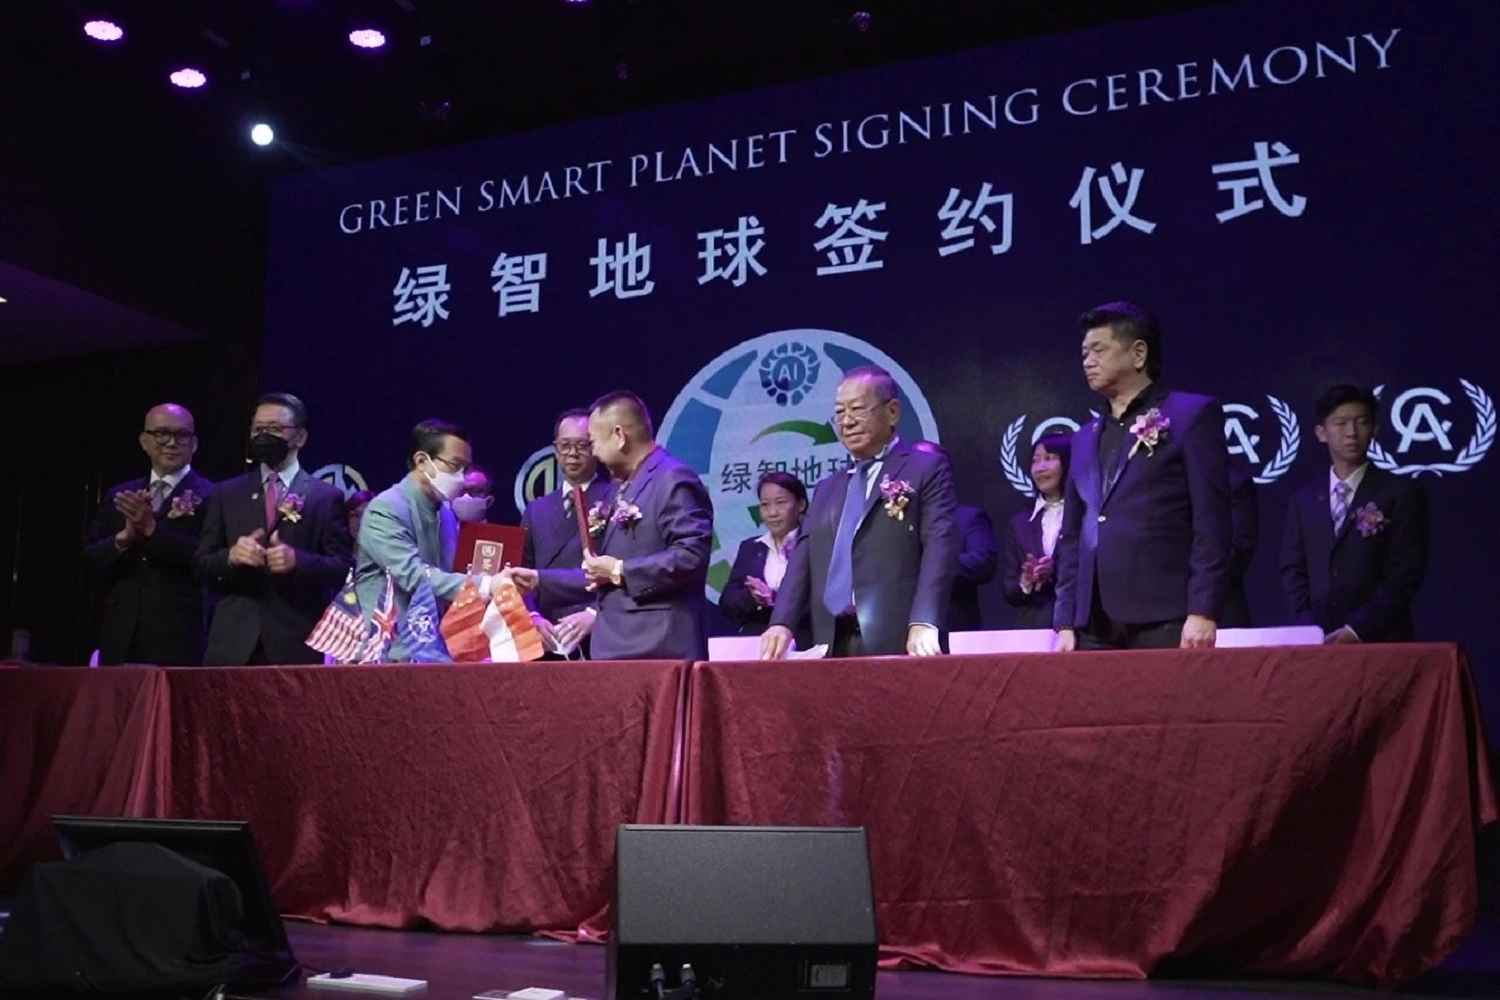 绿智地球业务签约仪式